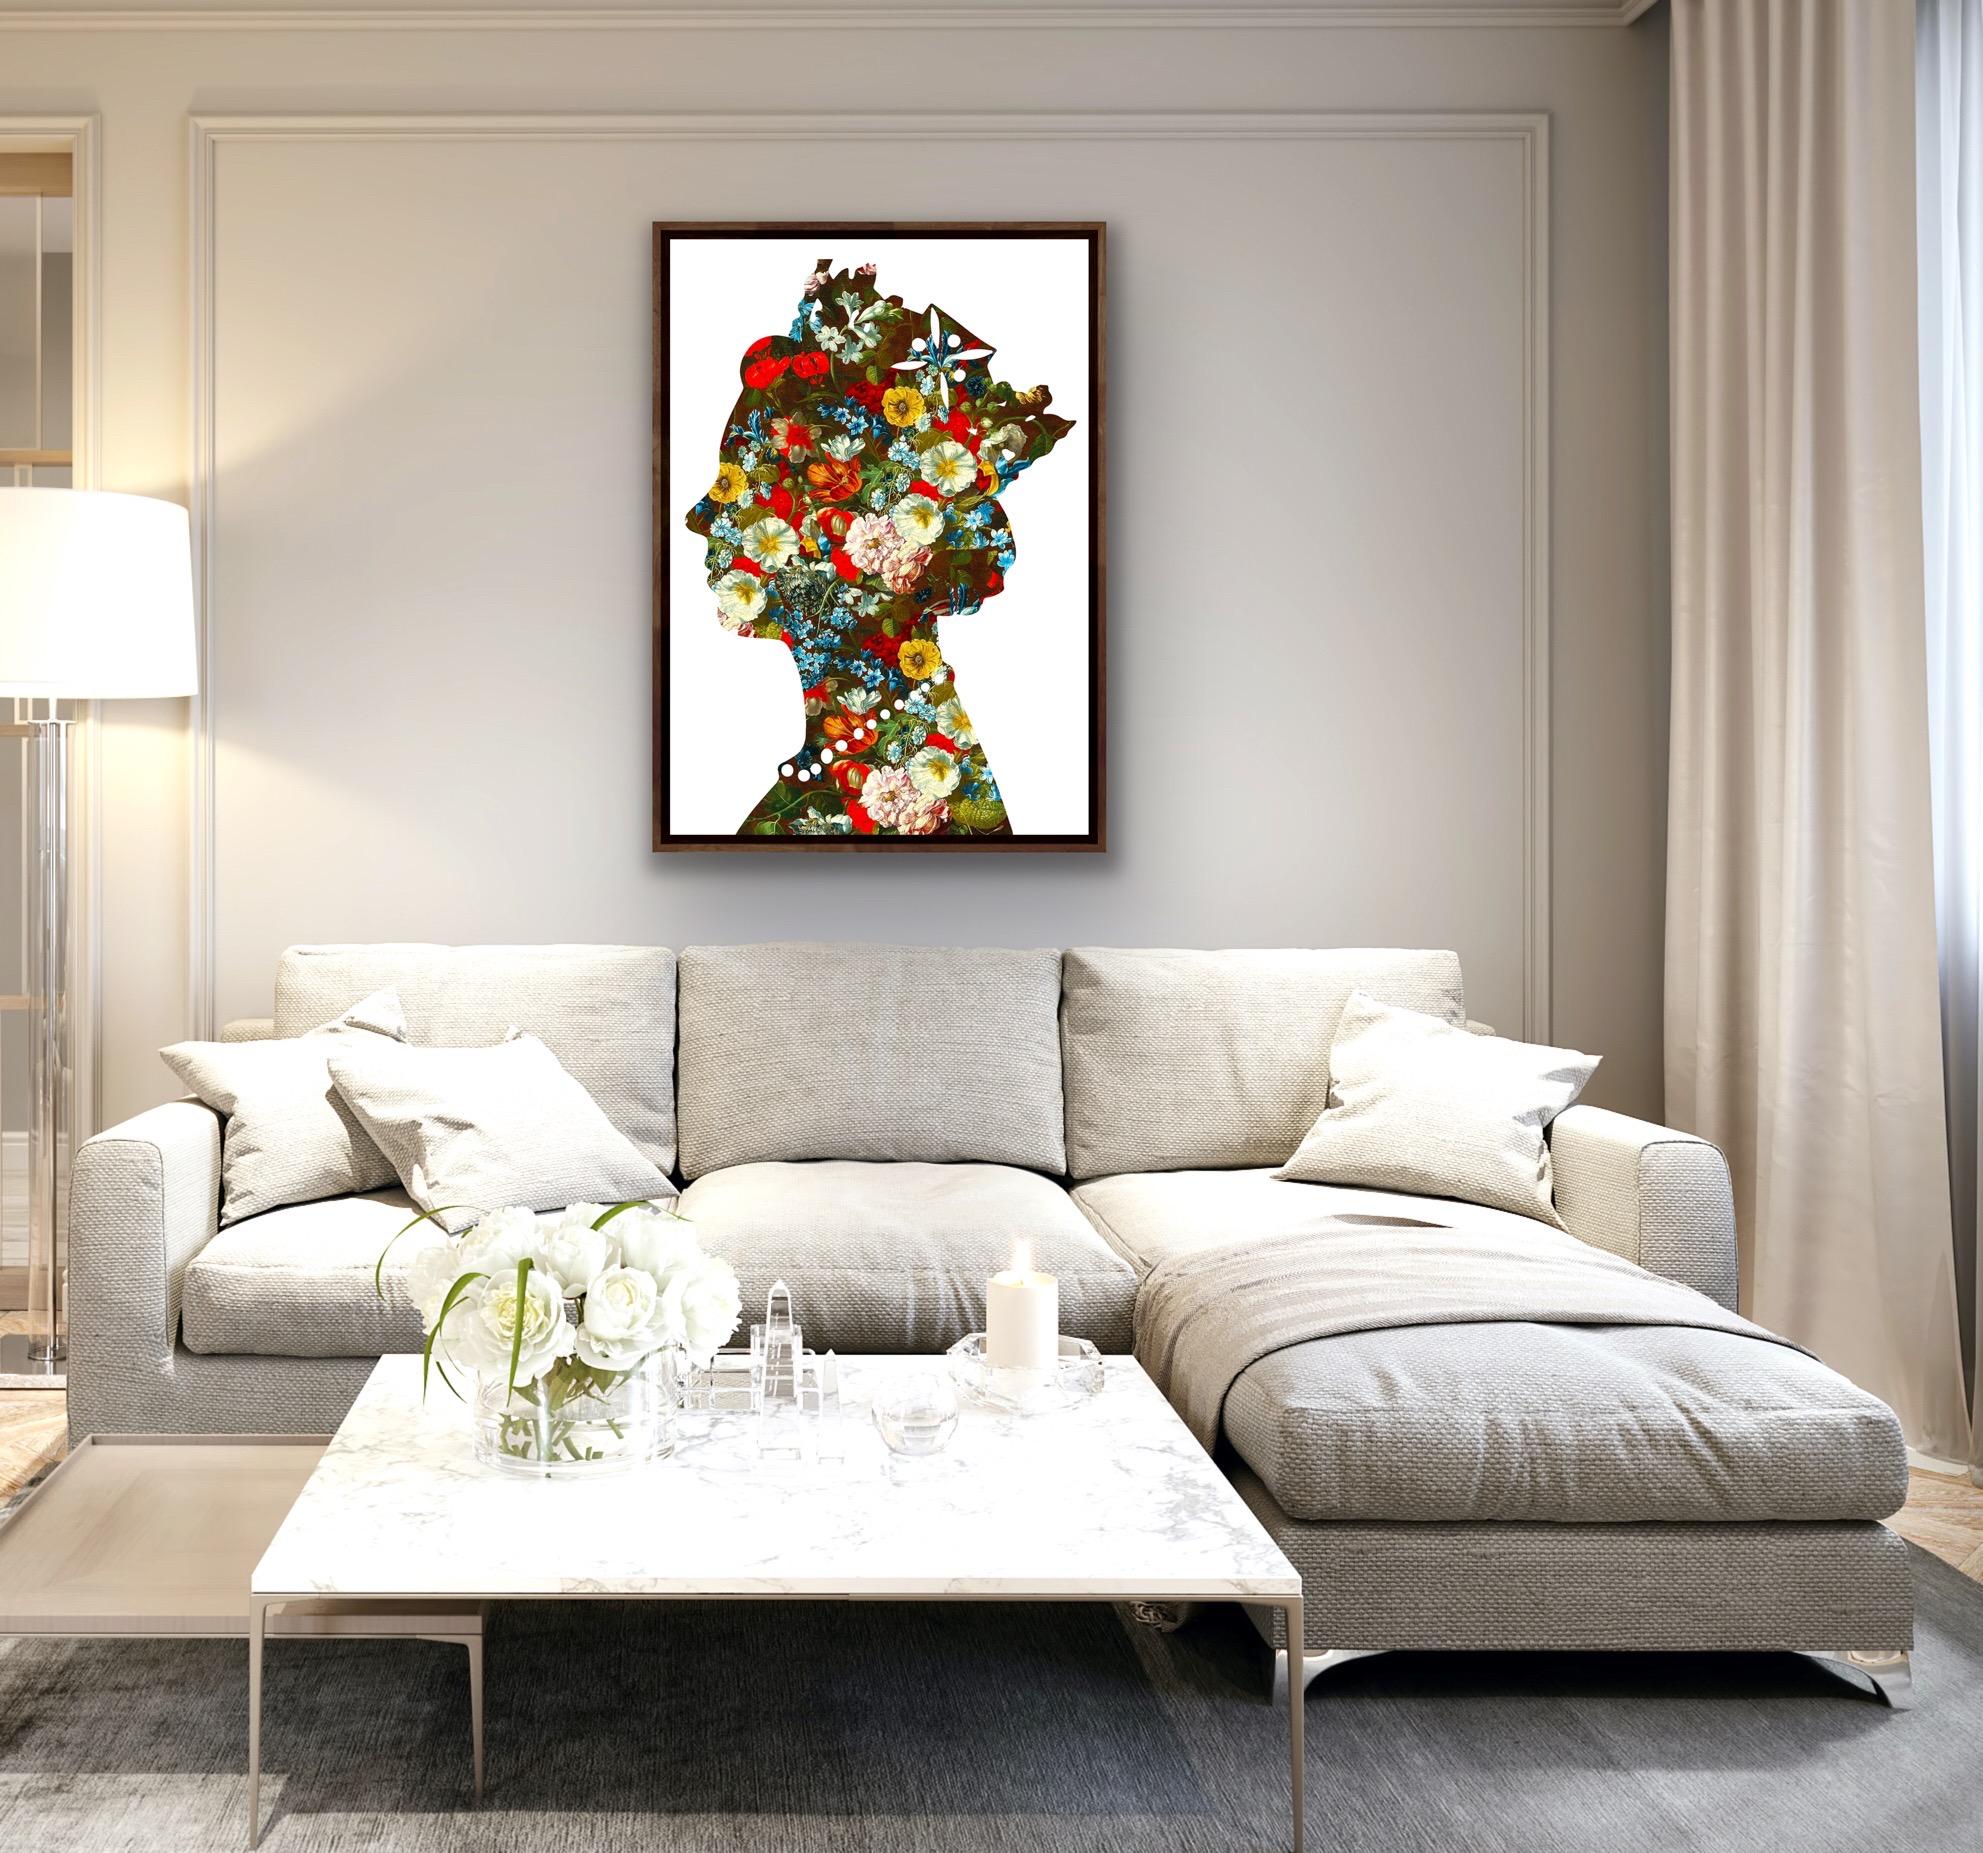 Eine Königin (02), Original Queen Art, Celebrity Art, Digitales Gemälde mit Blumenmuster – Painting von Agent X